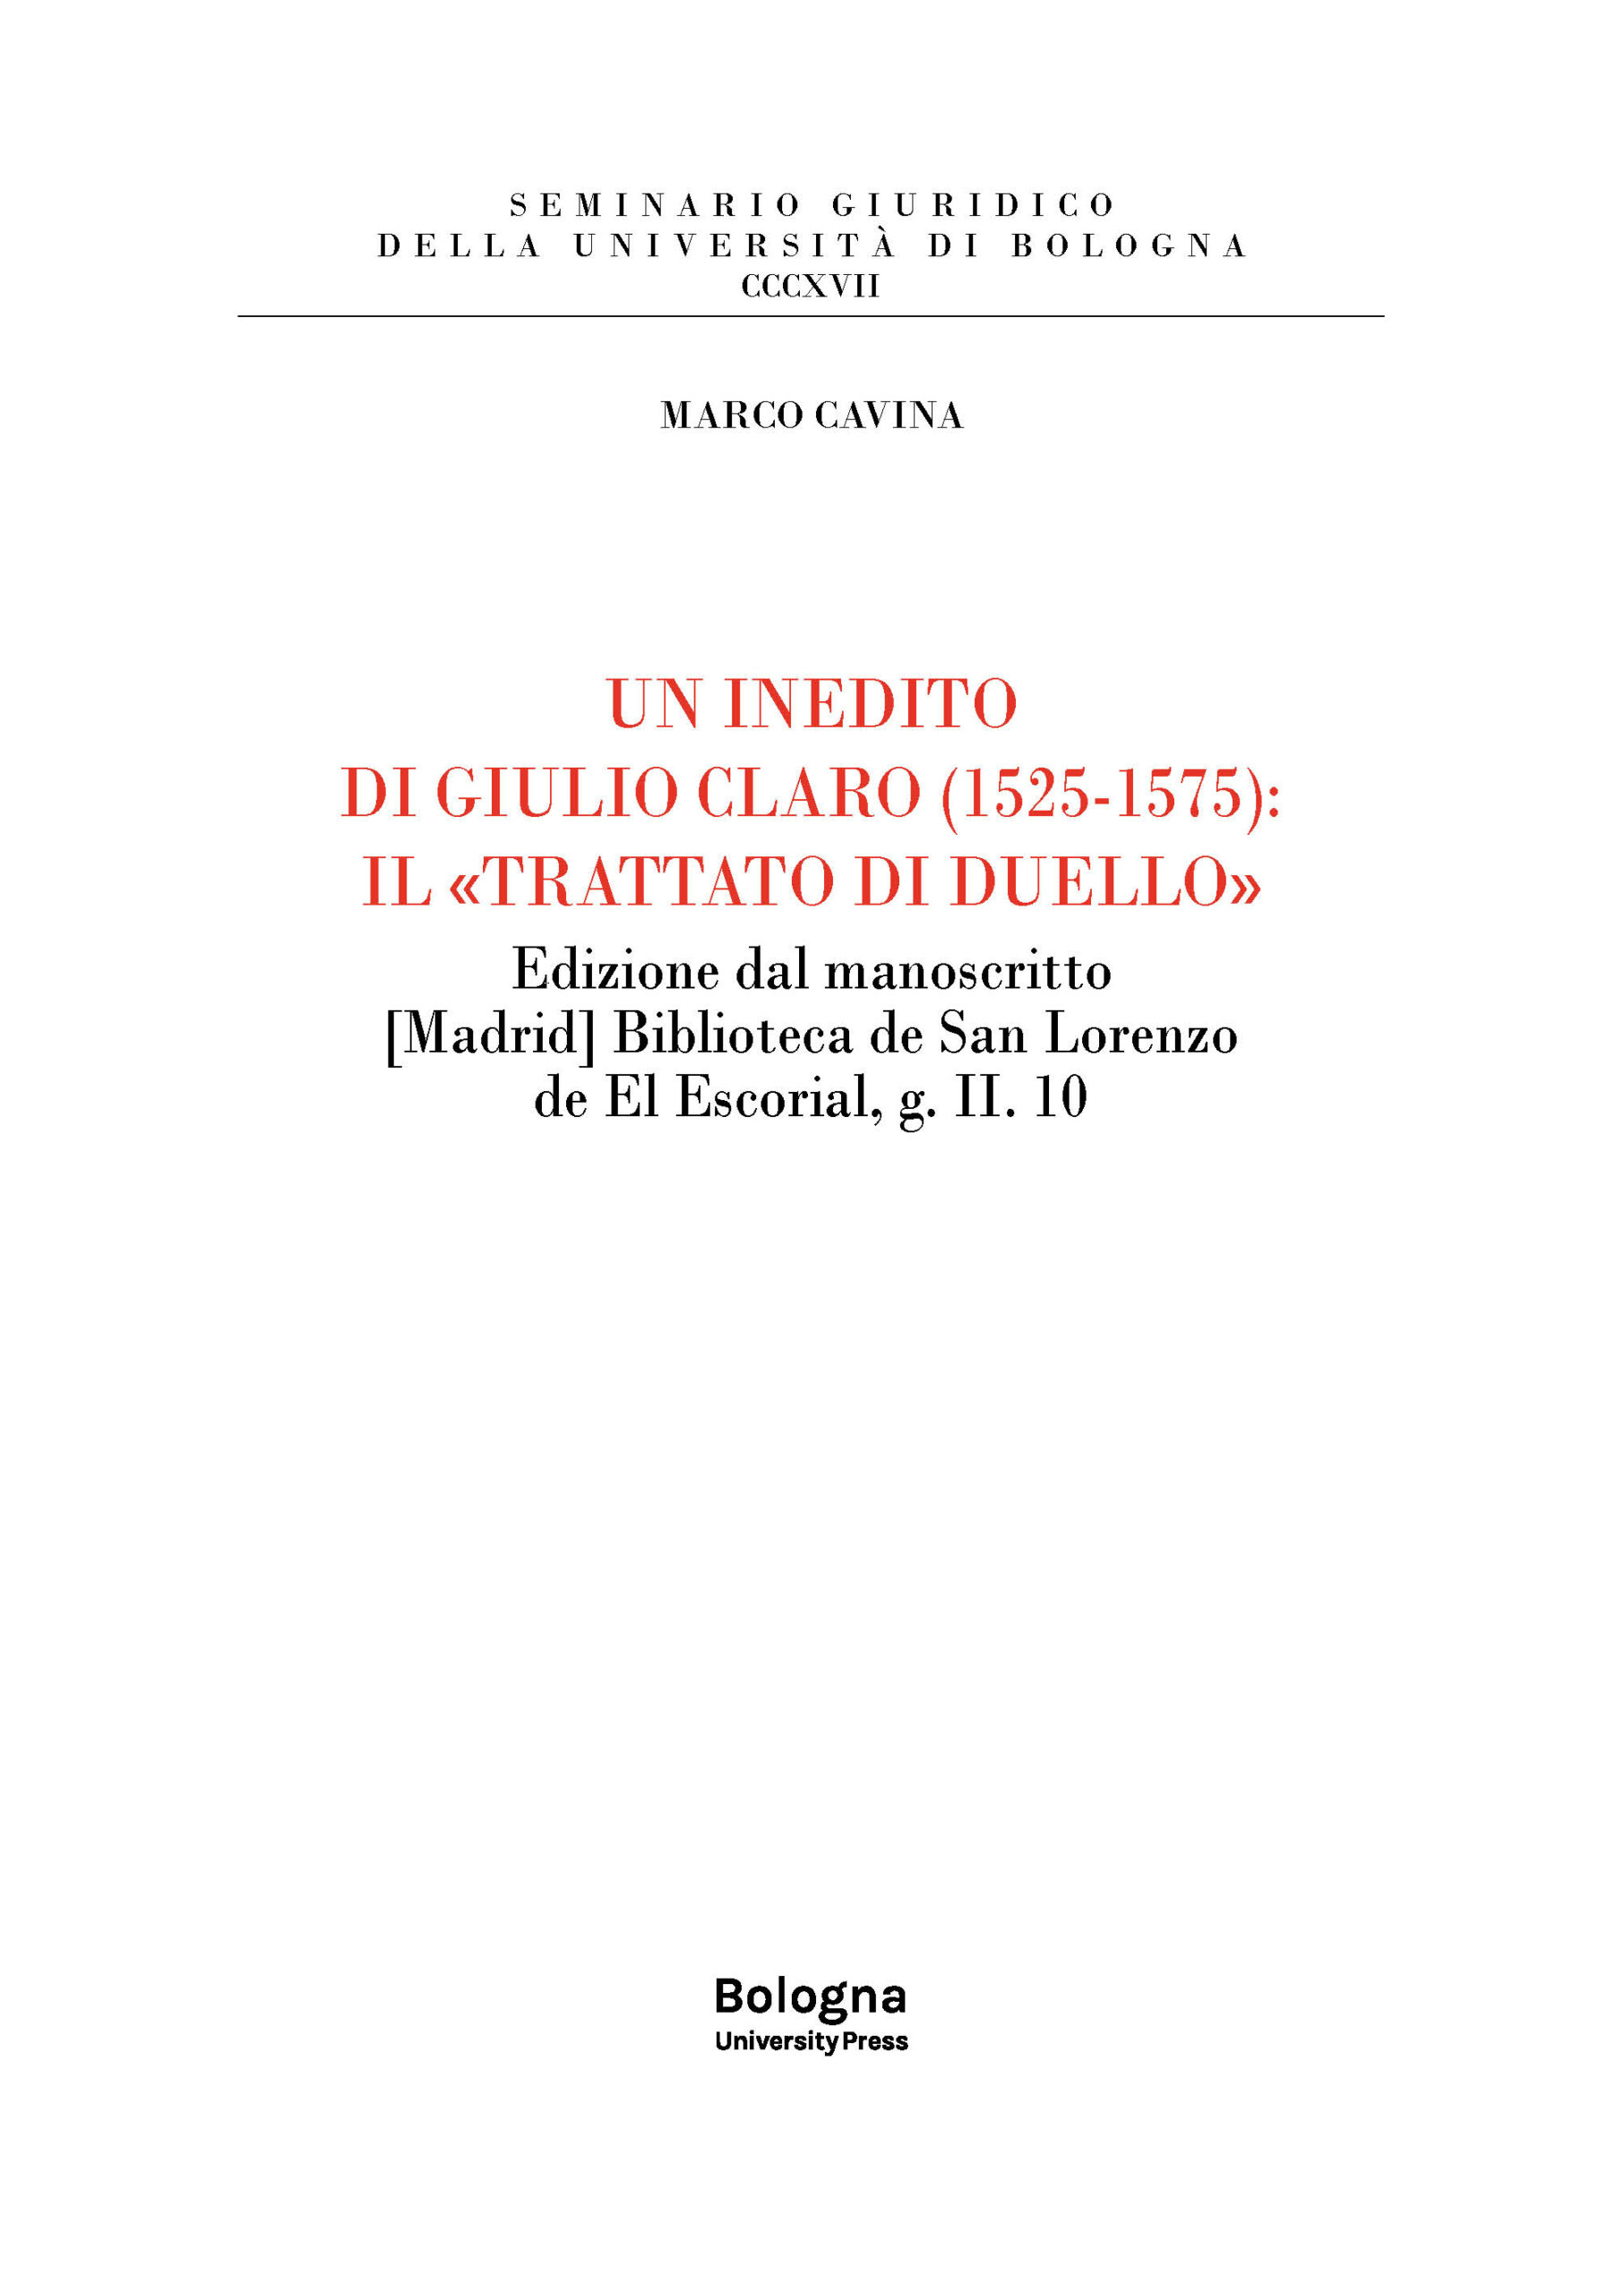 Un inedito di Giulio Claro (1525-1575): il «Trattato di duello» - Bologna University Press